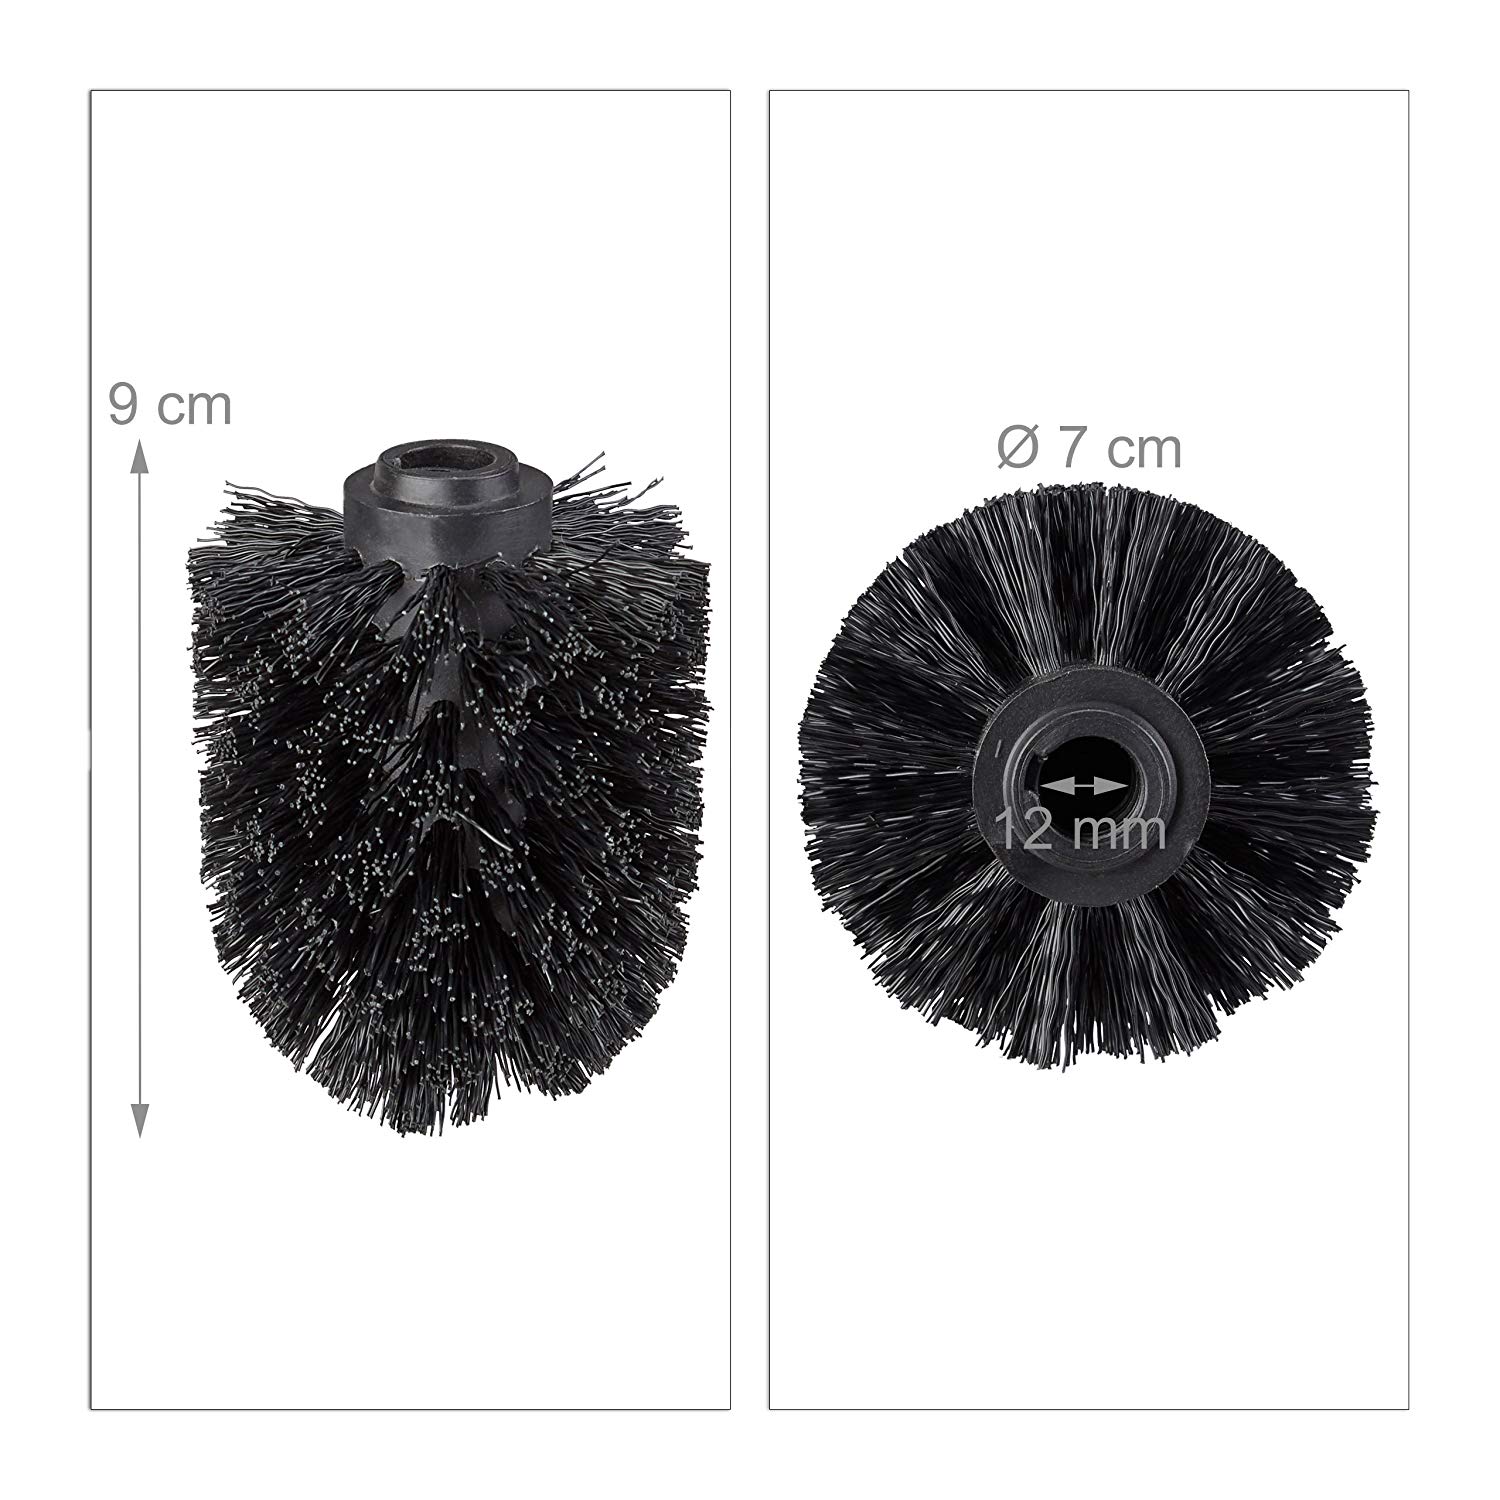 Toiletbørstehoved i sæt  of 5,  løse toiletbørster 12mm gevind, udskiftning af børstehoveddiameter 8 cm,  sort